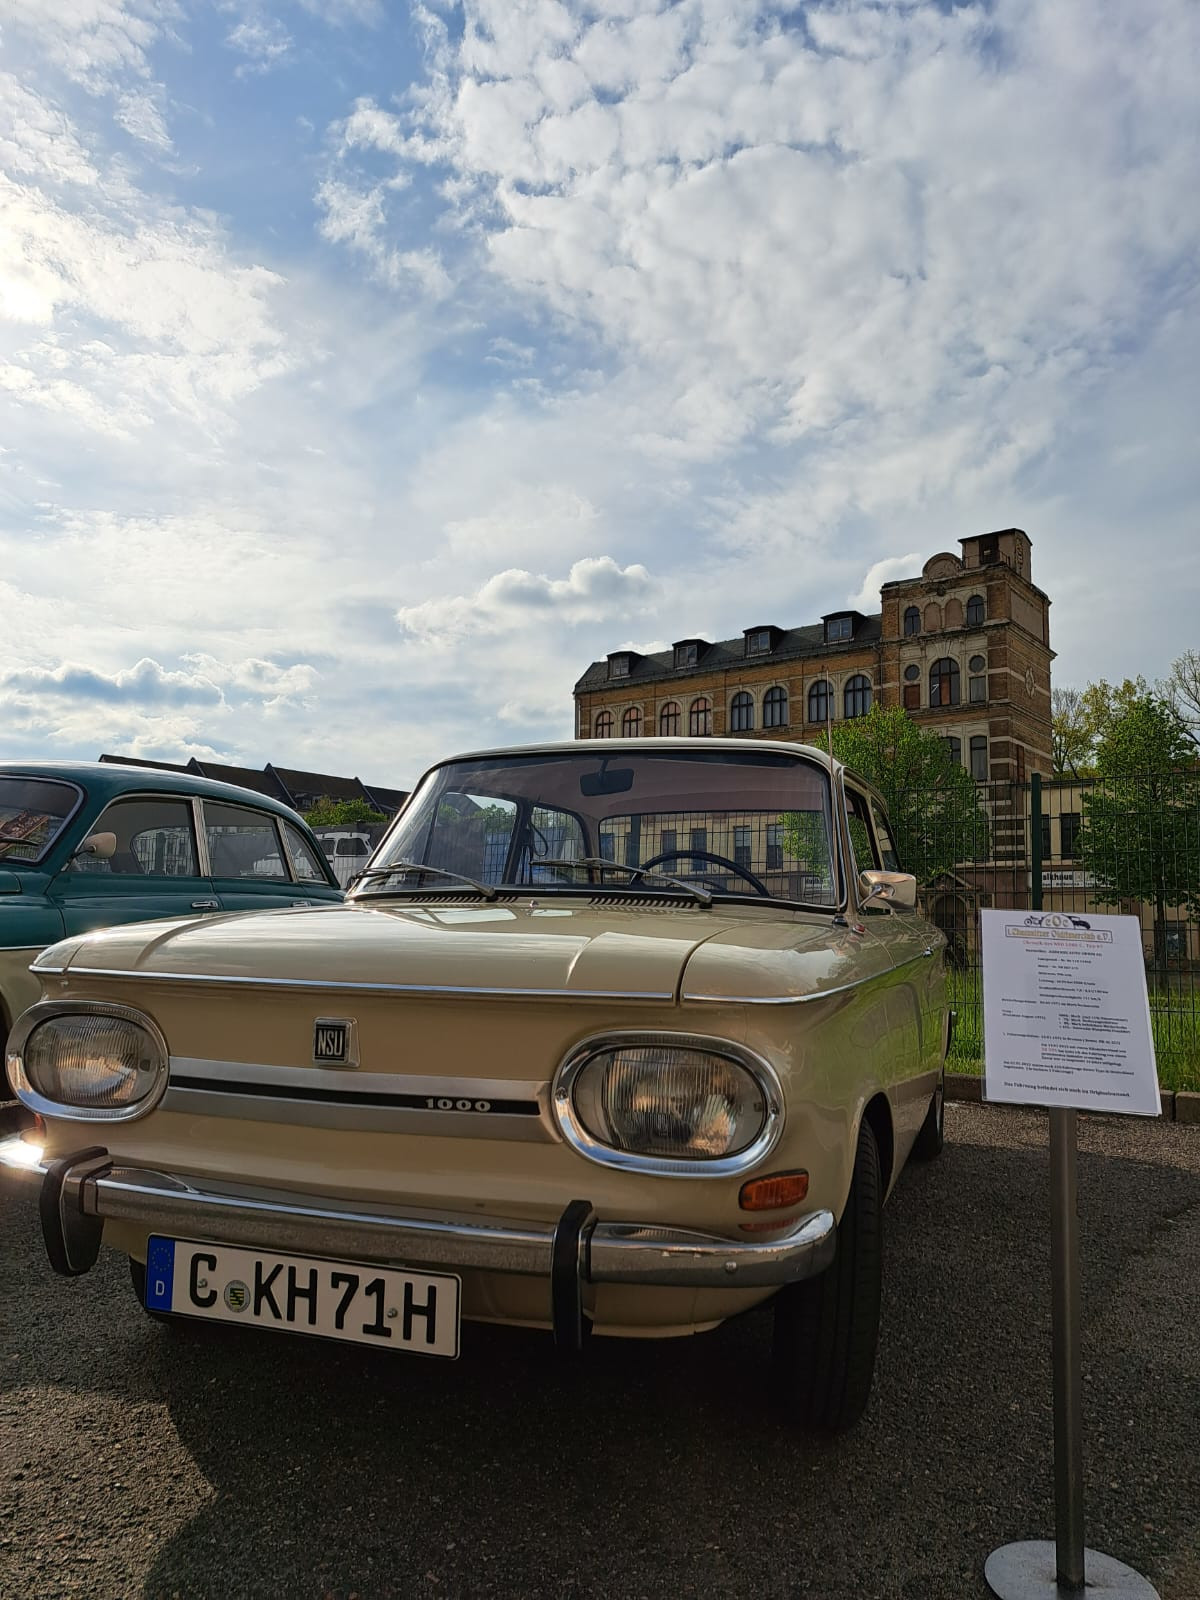 Historisches Auto vor dem Fahrzeugmuseum (Copyright: Franziska Schirrmeister)